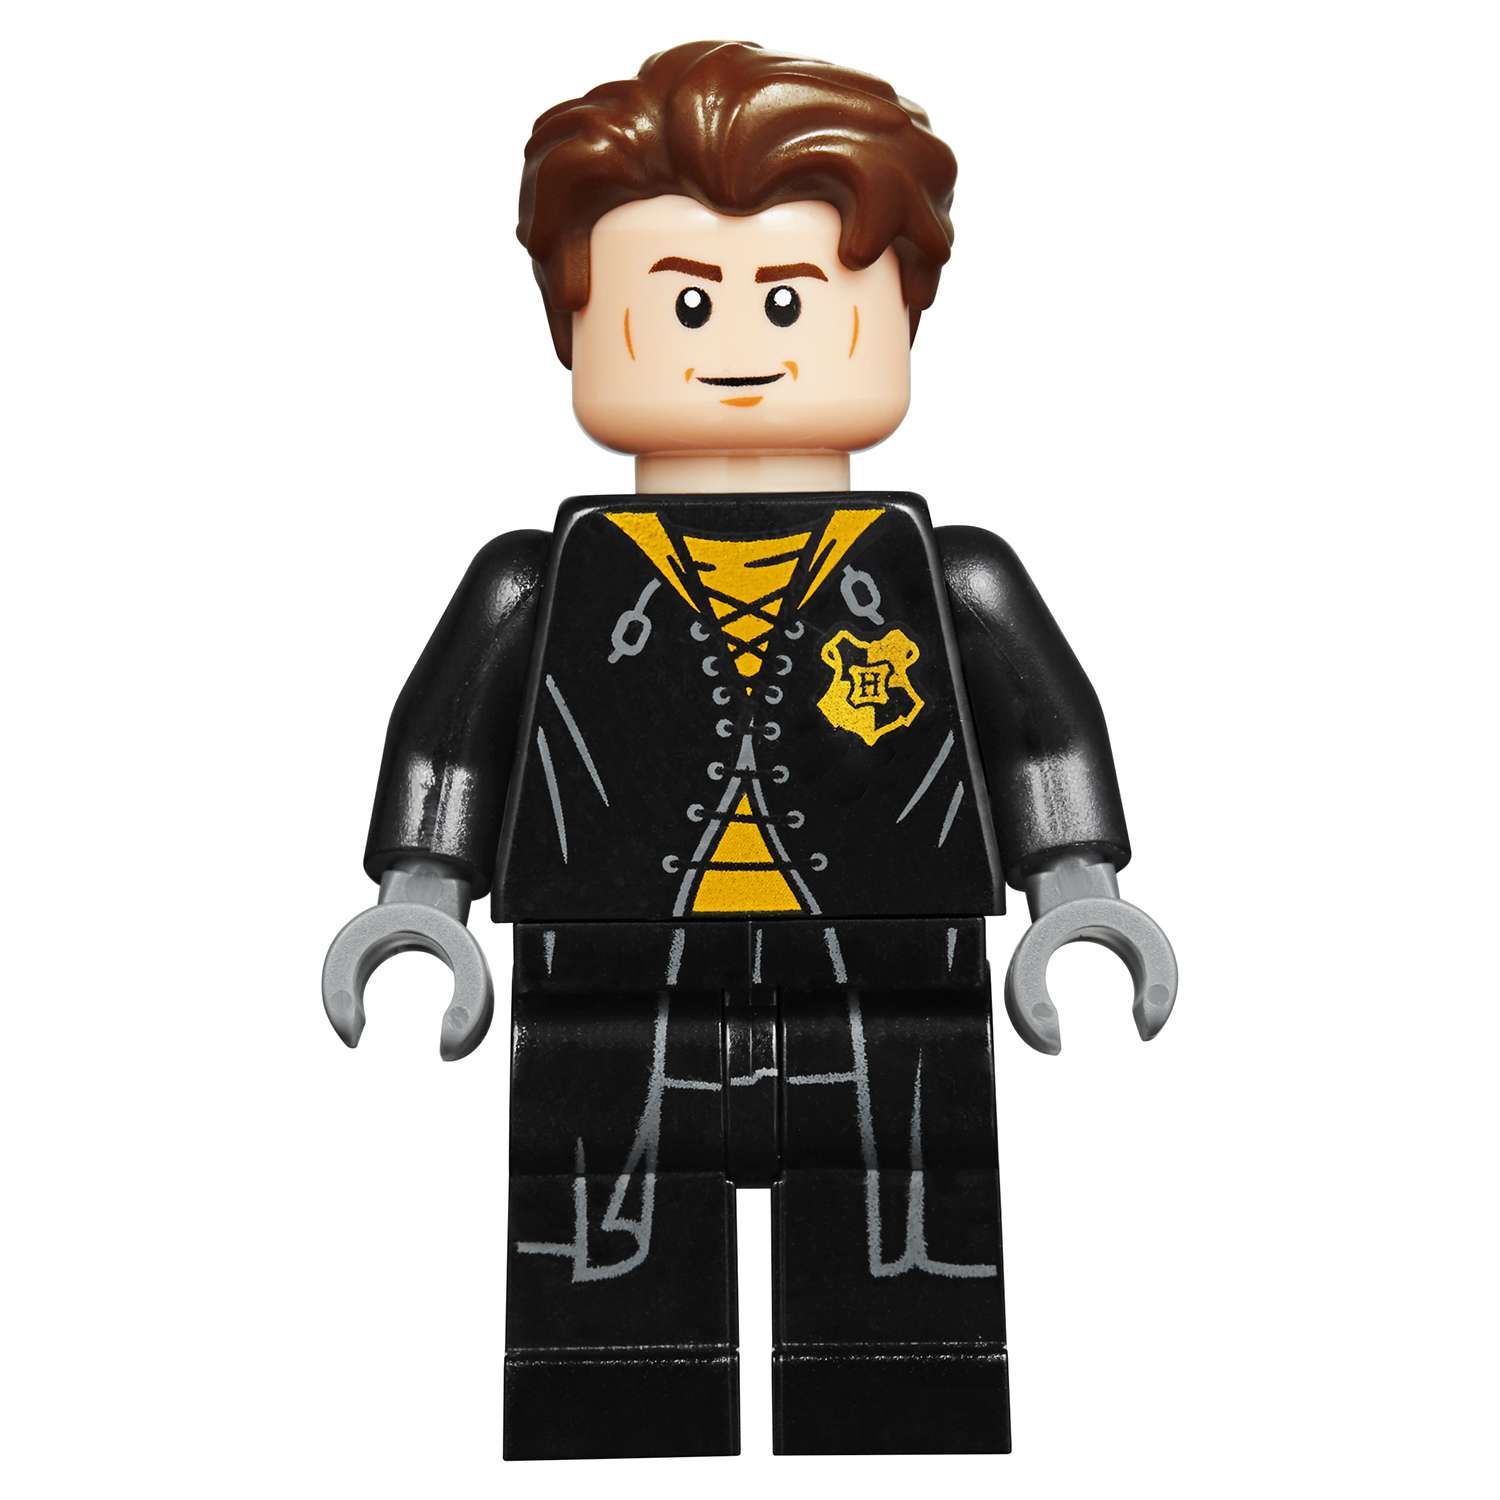 Конструктор LEGO Harry Potter Турнир трёх волшебников венгерская хвосторога 75946 - фото 21